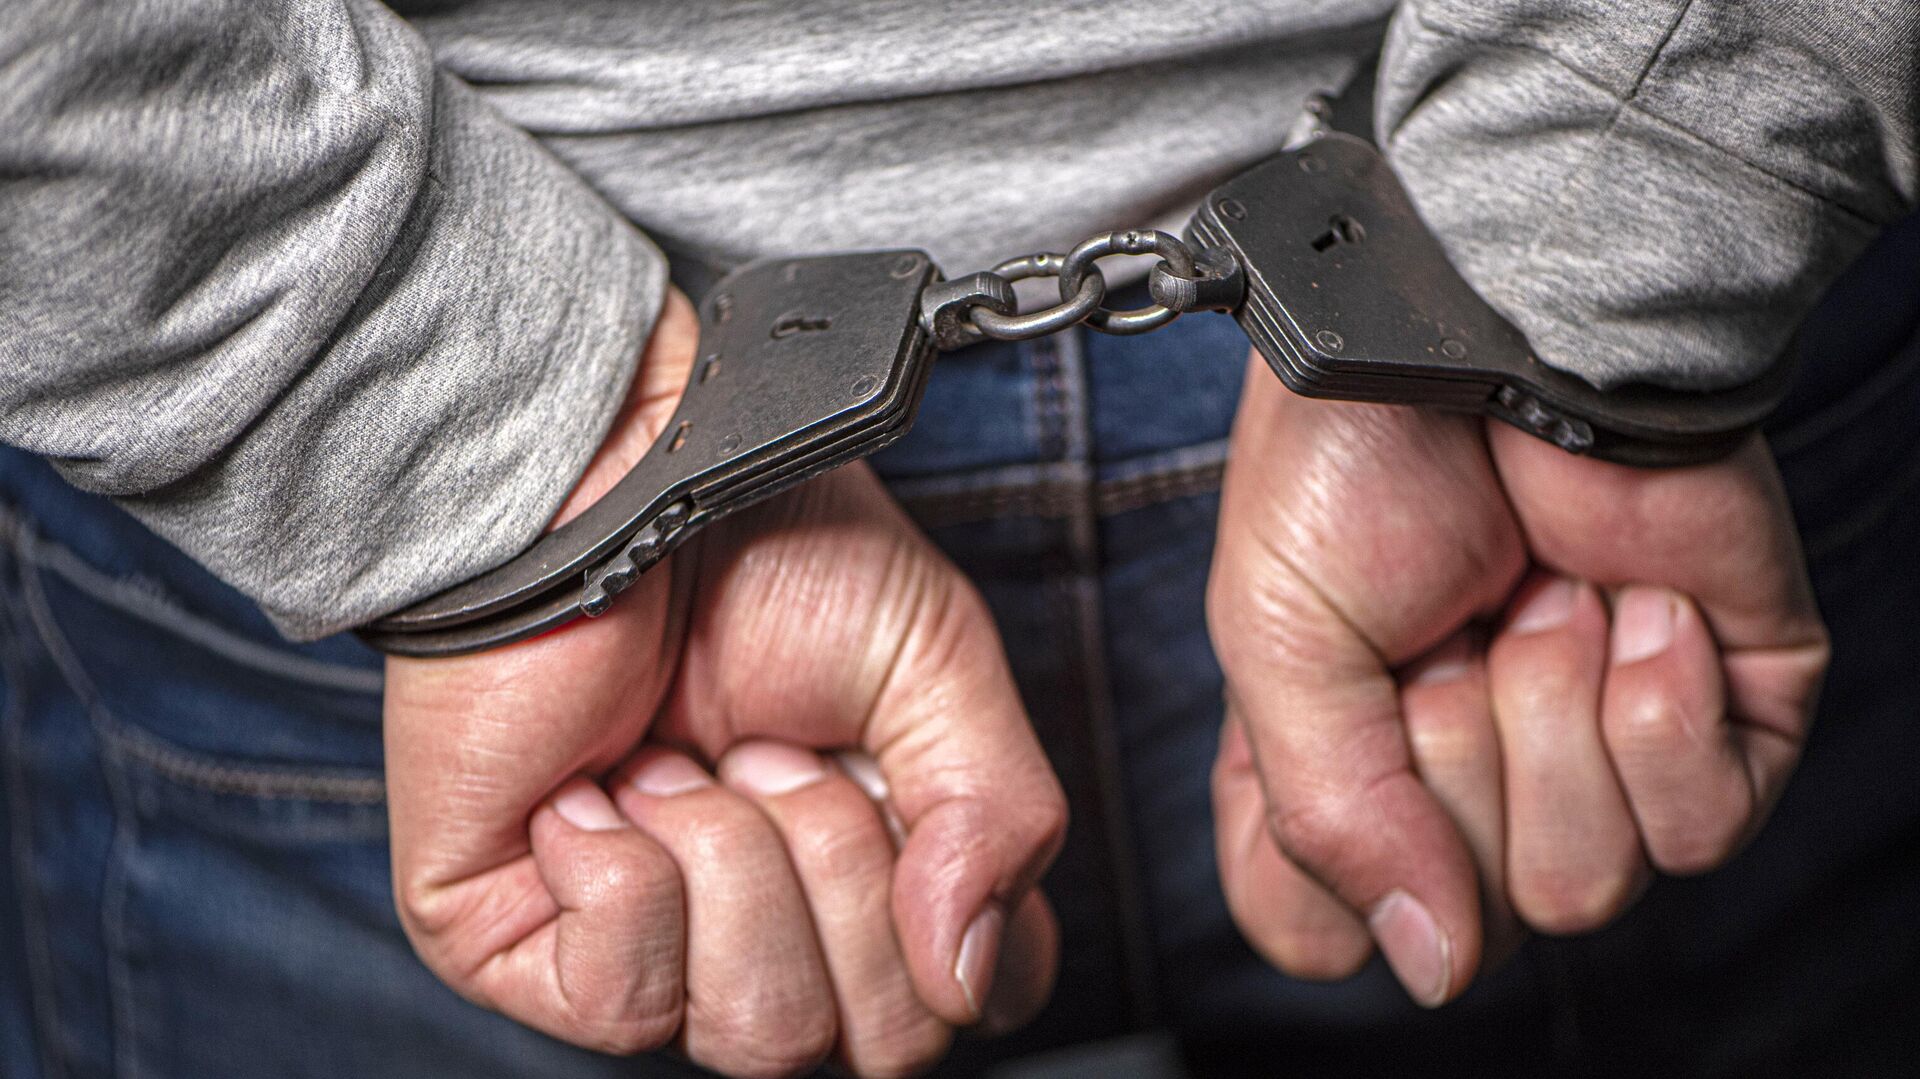 Три человека арестованы по подозрению в планировании теракта в студенческом общежитии РУДН